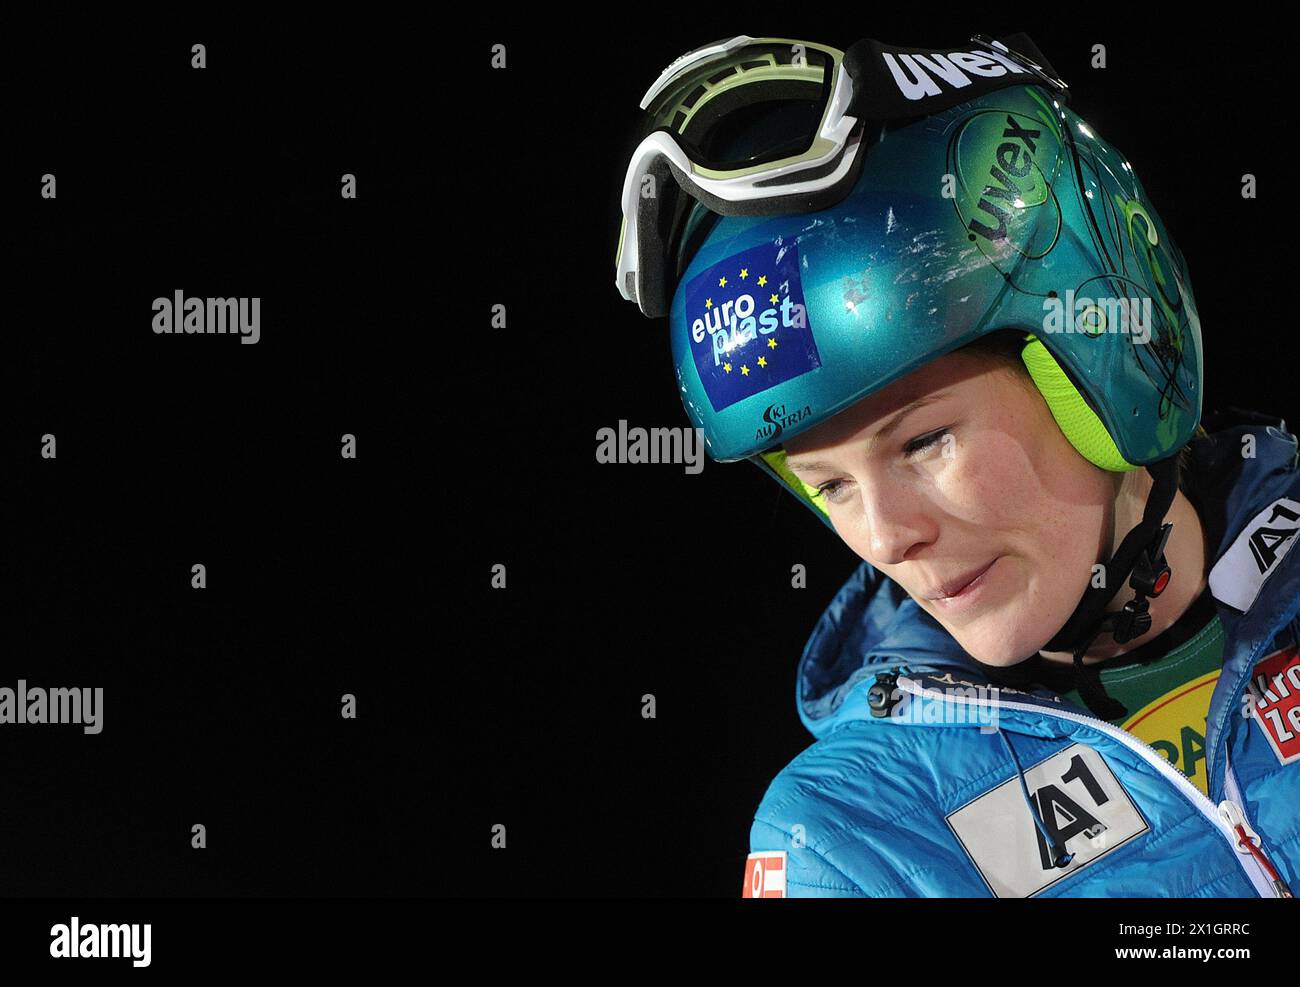 Carmen Thalmann (AUT) durante il Parallelslalom, evento a squadre della Coppa del mondo di Sci Alpino FIS a Patscherkofel, Innsbruck, Austria, il 2014/02/25. - 20140225 PD3265 - Rechteinfo: Diritti gestiti (RM) Foto Stock